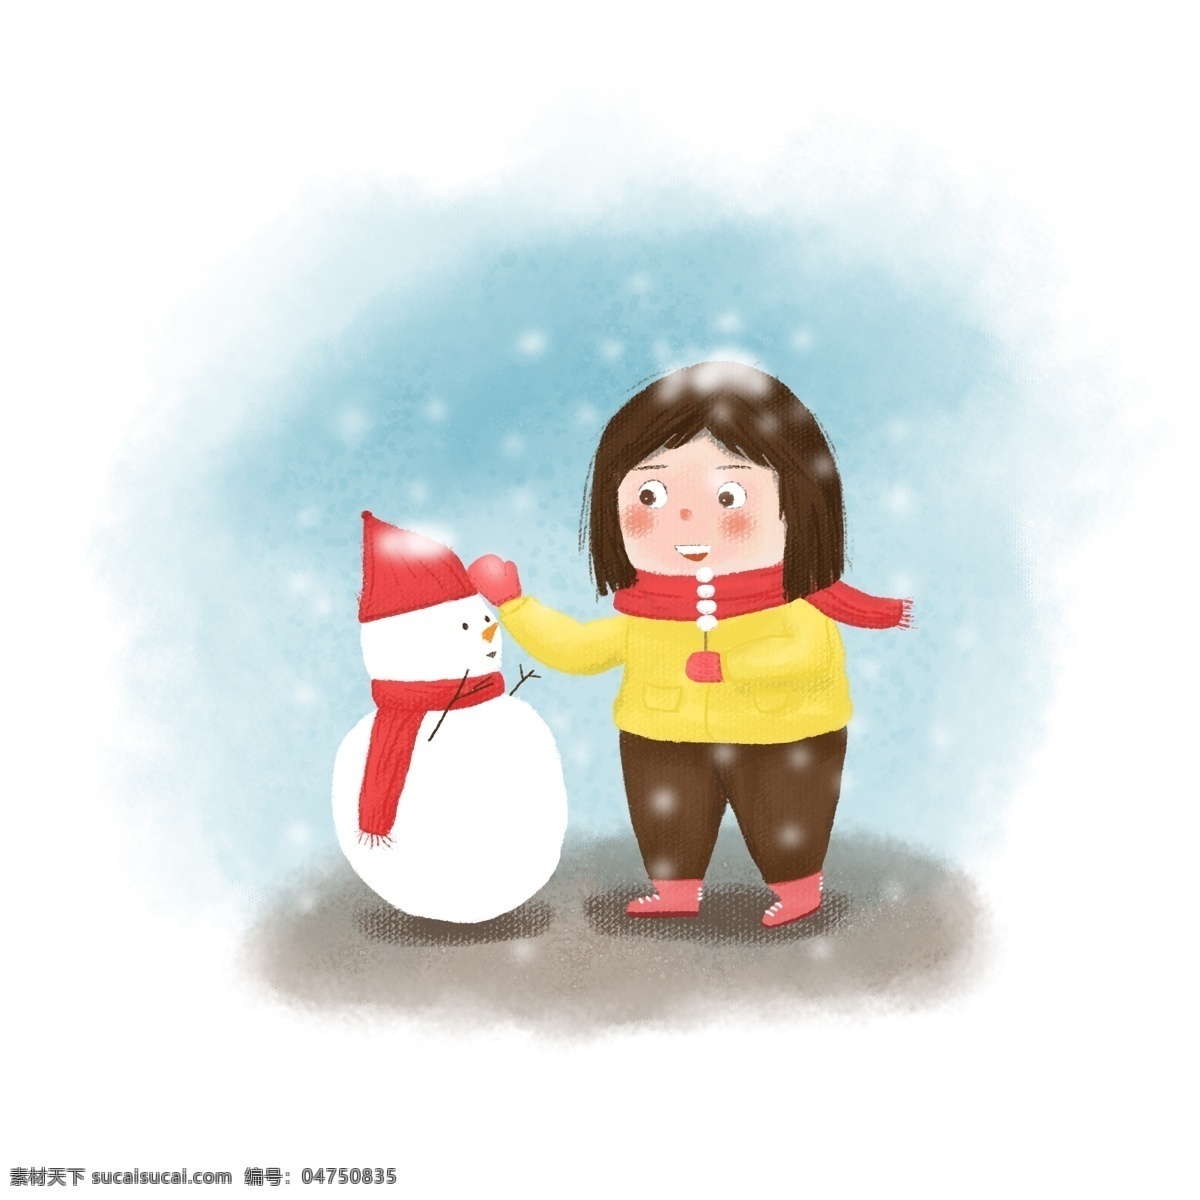 下雪天 小女孩 雪人 小雪 节气 人物 可爱 卡通人物 人物素材 下雪